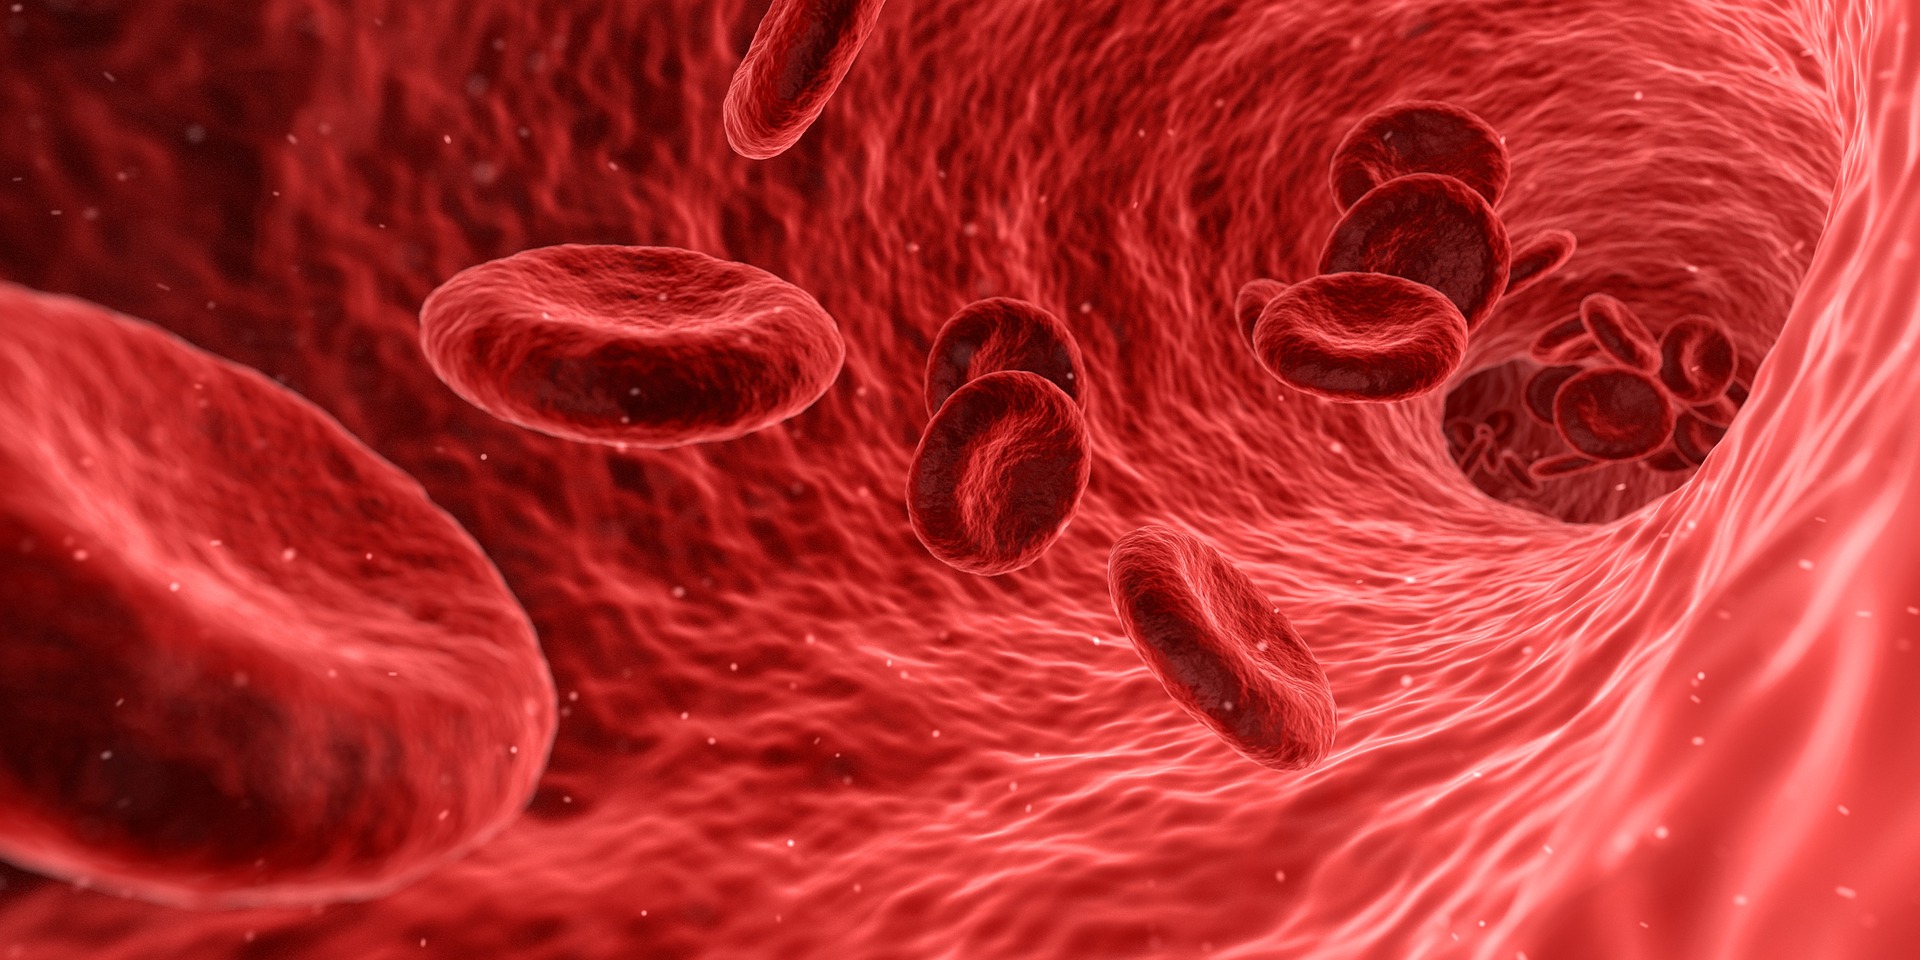 治疗移植相关血栓性微血管病靶向单抗narsoplimab获FDA优先审查